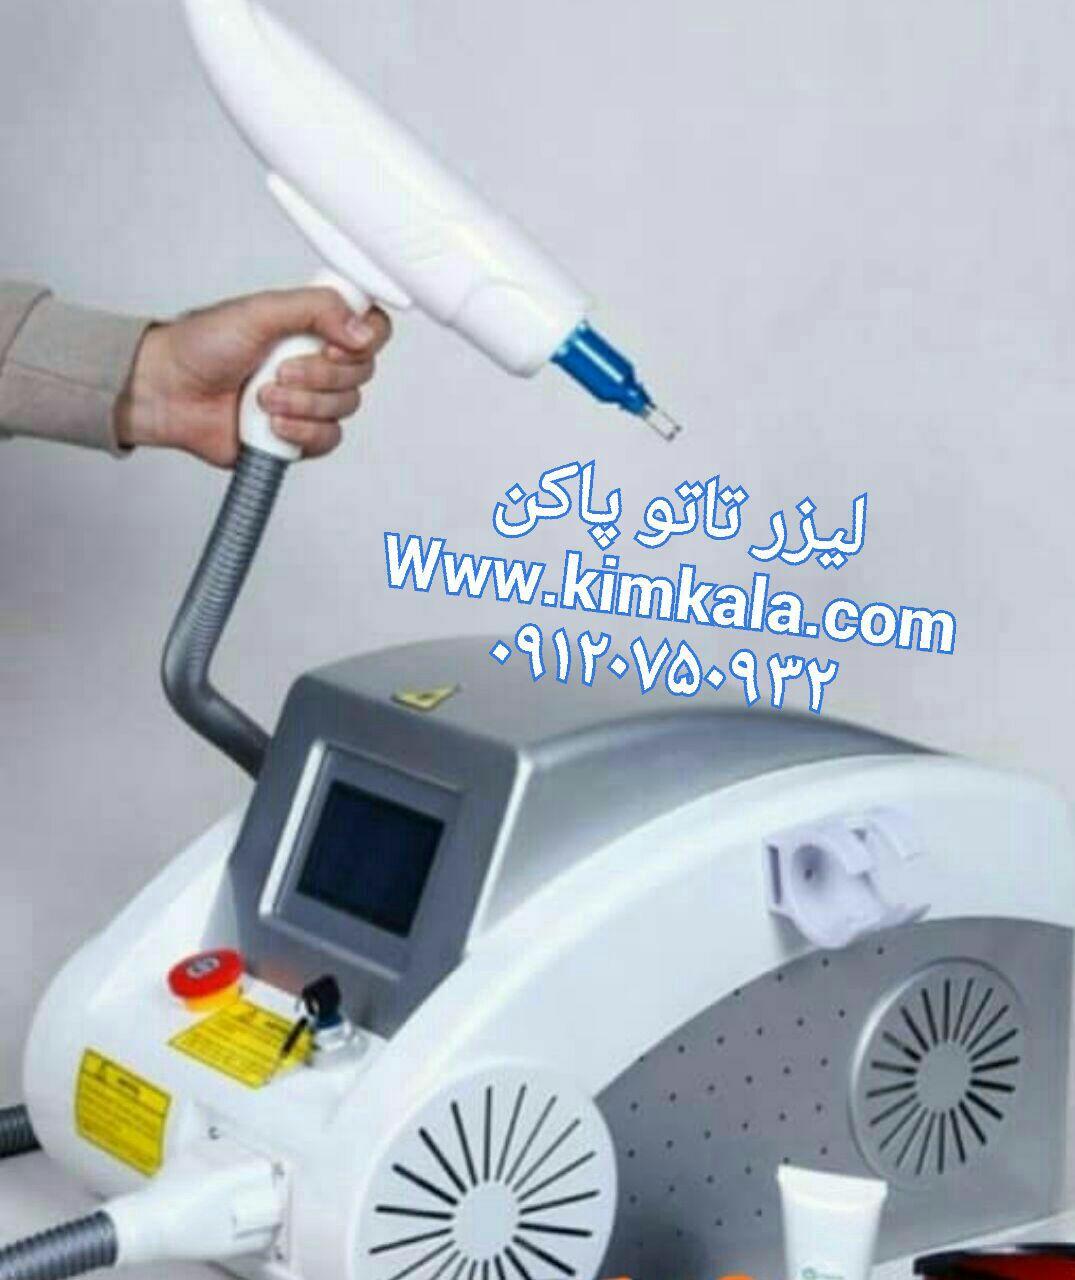 قیمت دستگاه تاتو پاک کن | 09120132883  | دستگاه لیزر کیوسوئیچ 